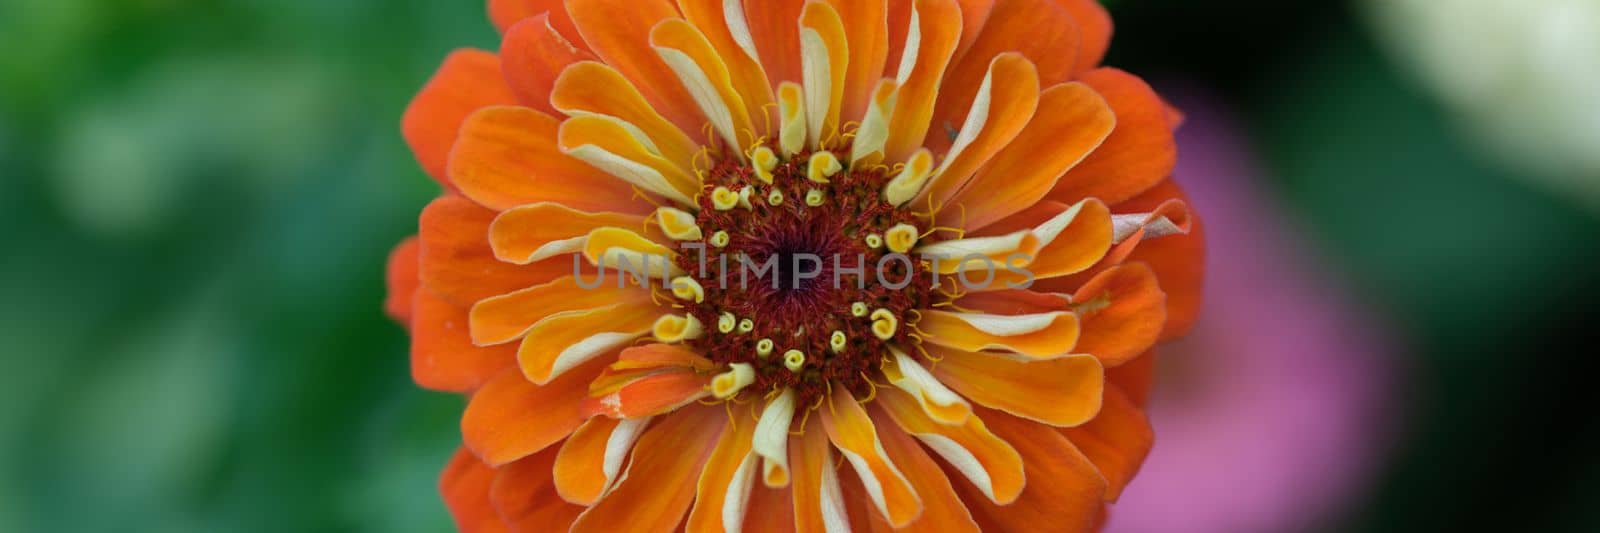 Beautiful orange gerbera flower in summer garden. Garden flowers in a flower bed